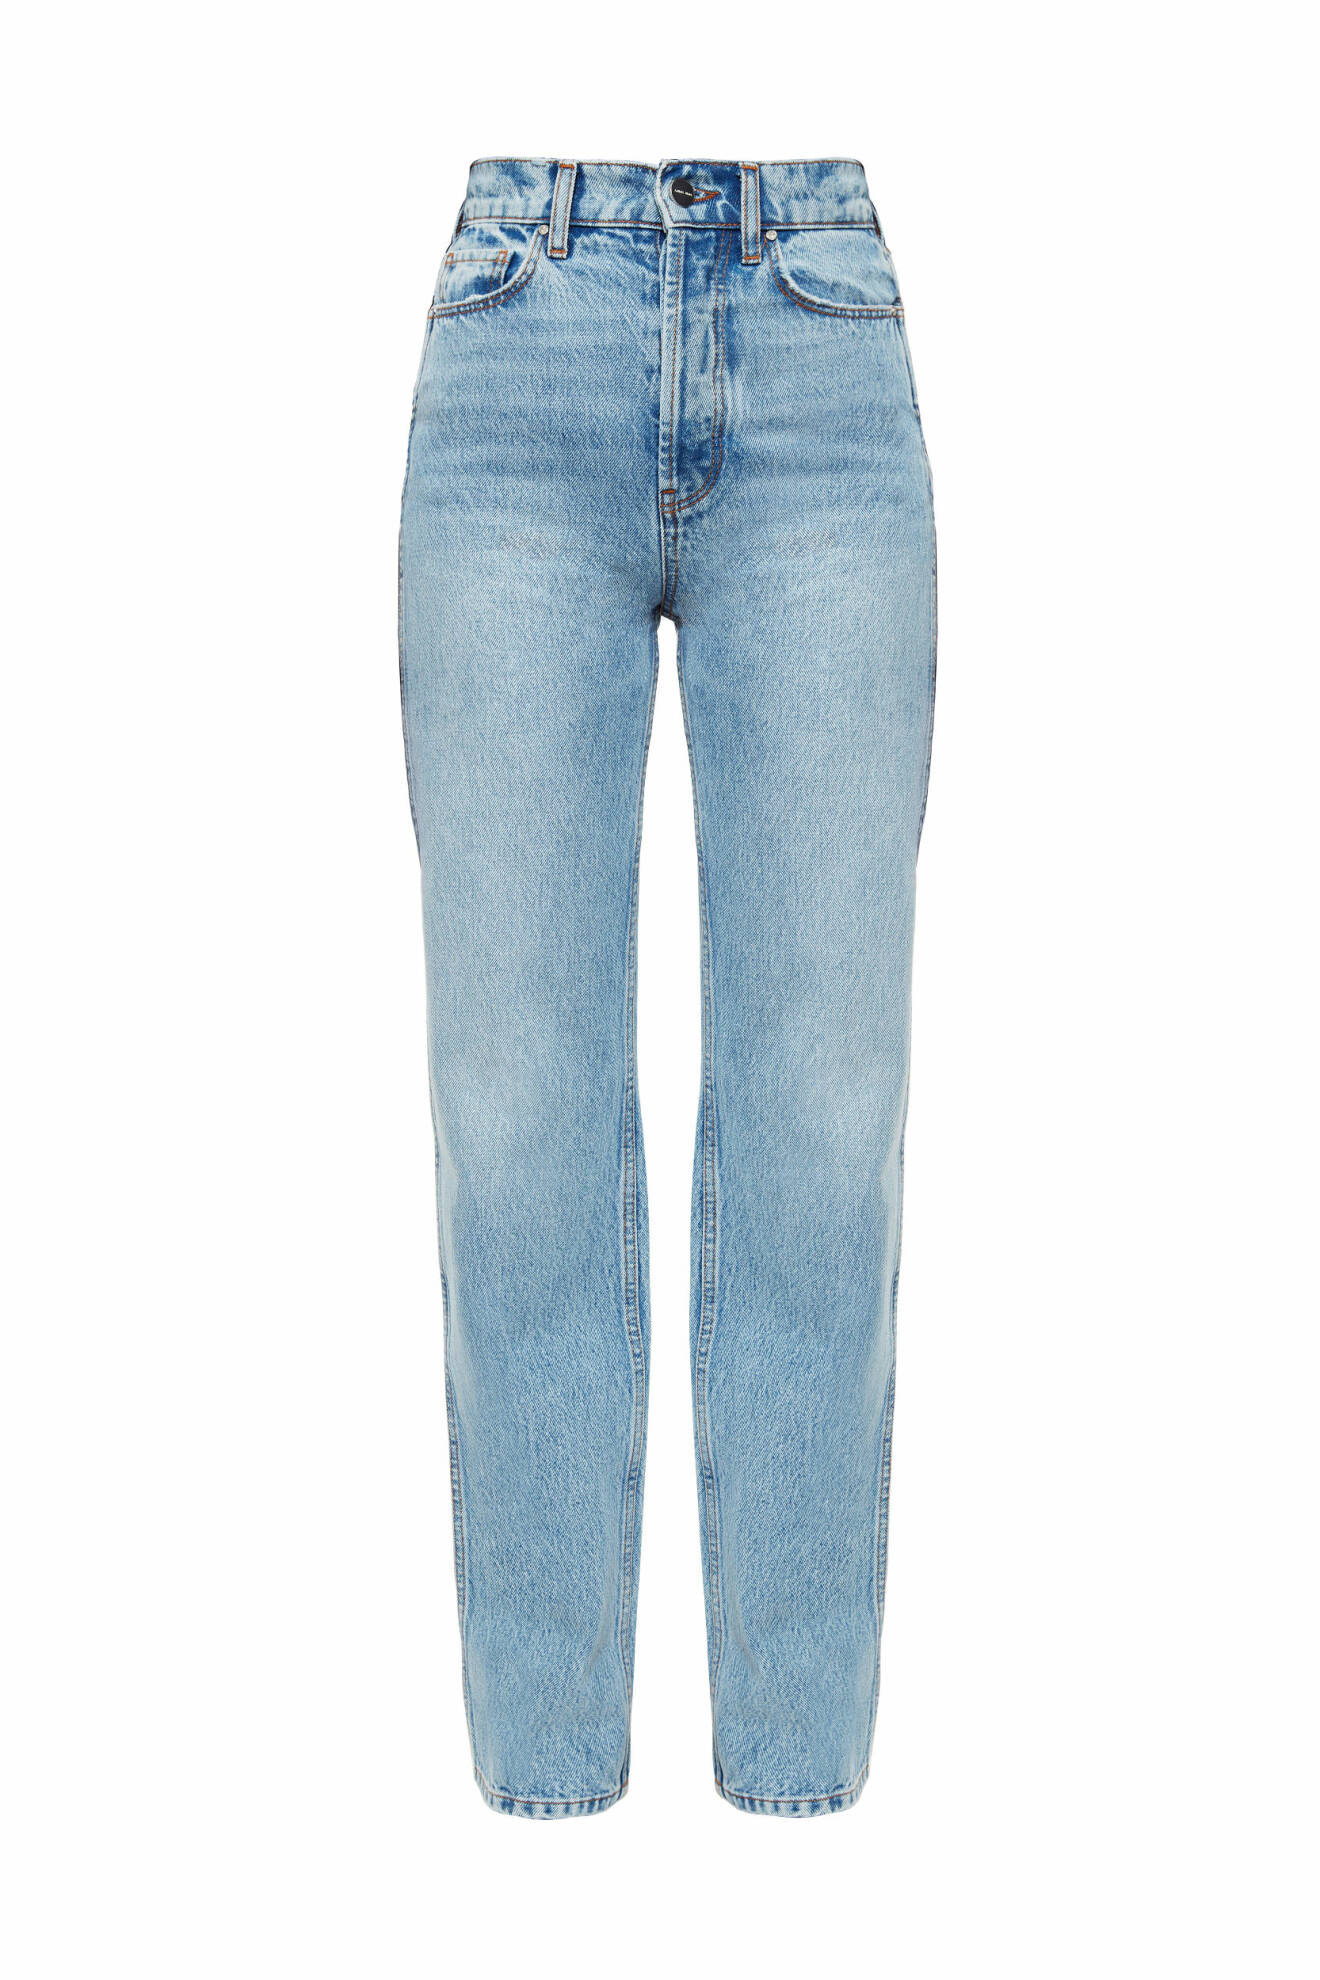 Anine Bing x Helena Christensen jeans